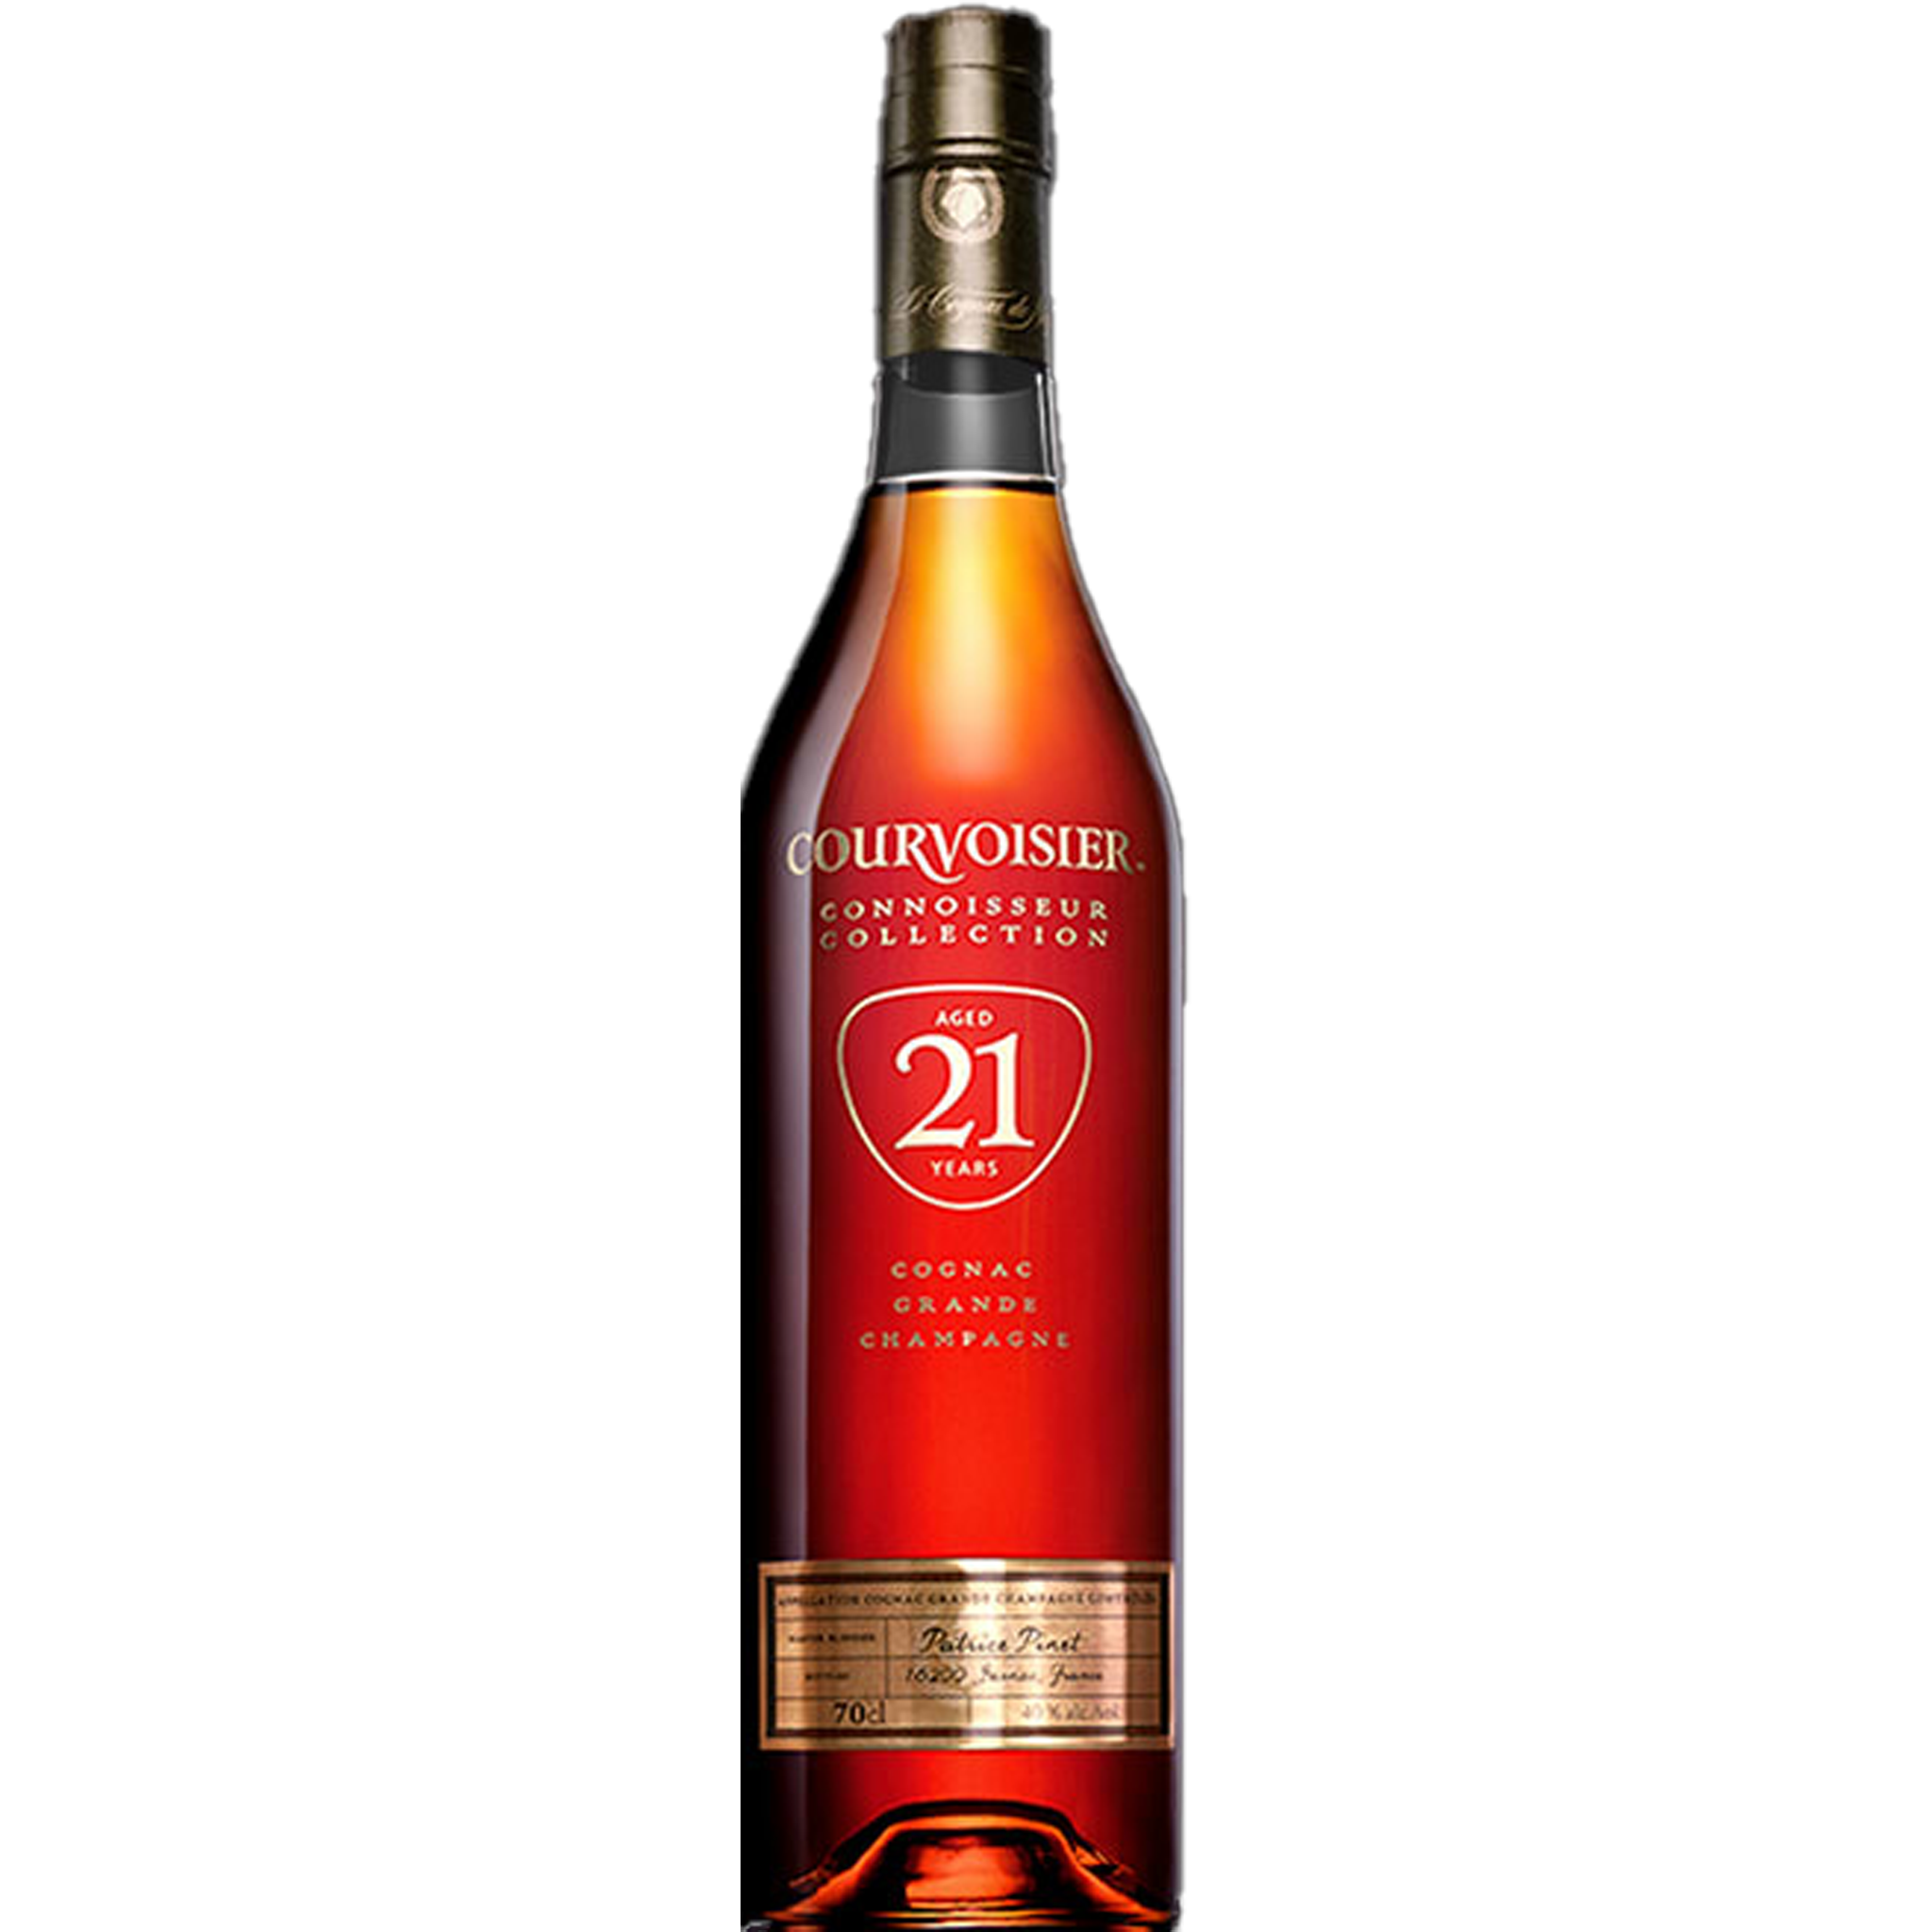 Courvoisier 21 years Cognac